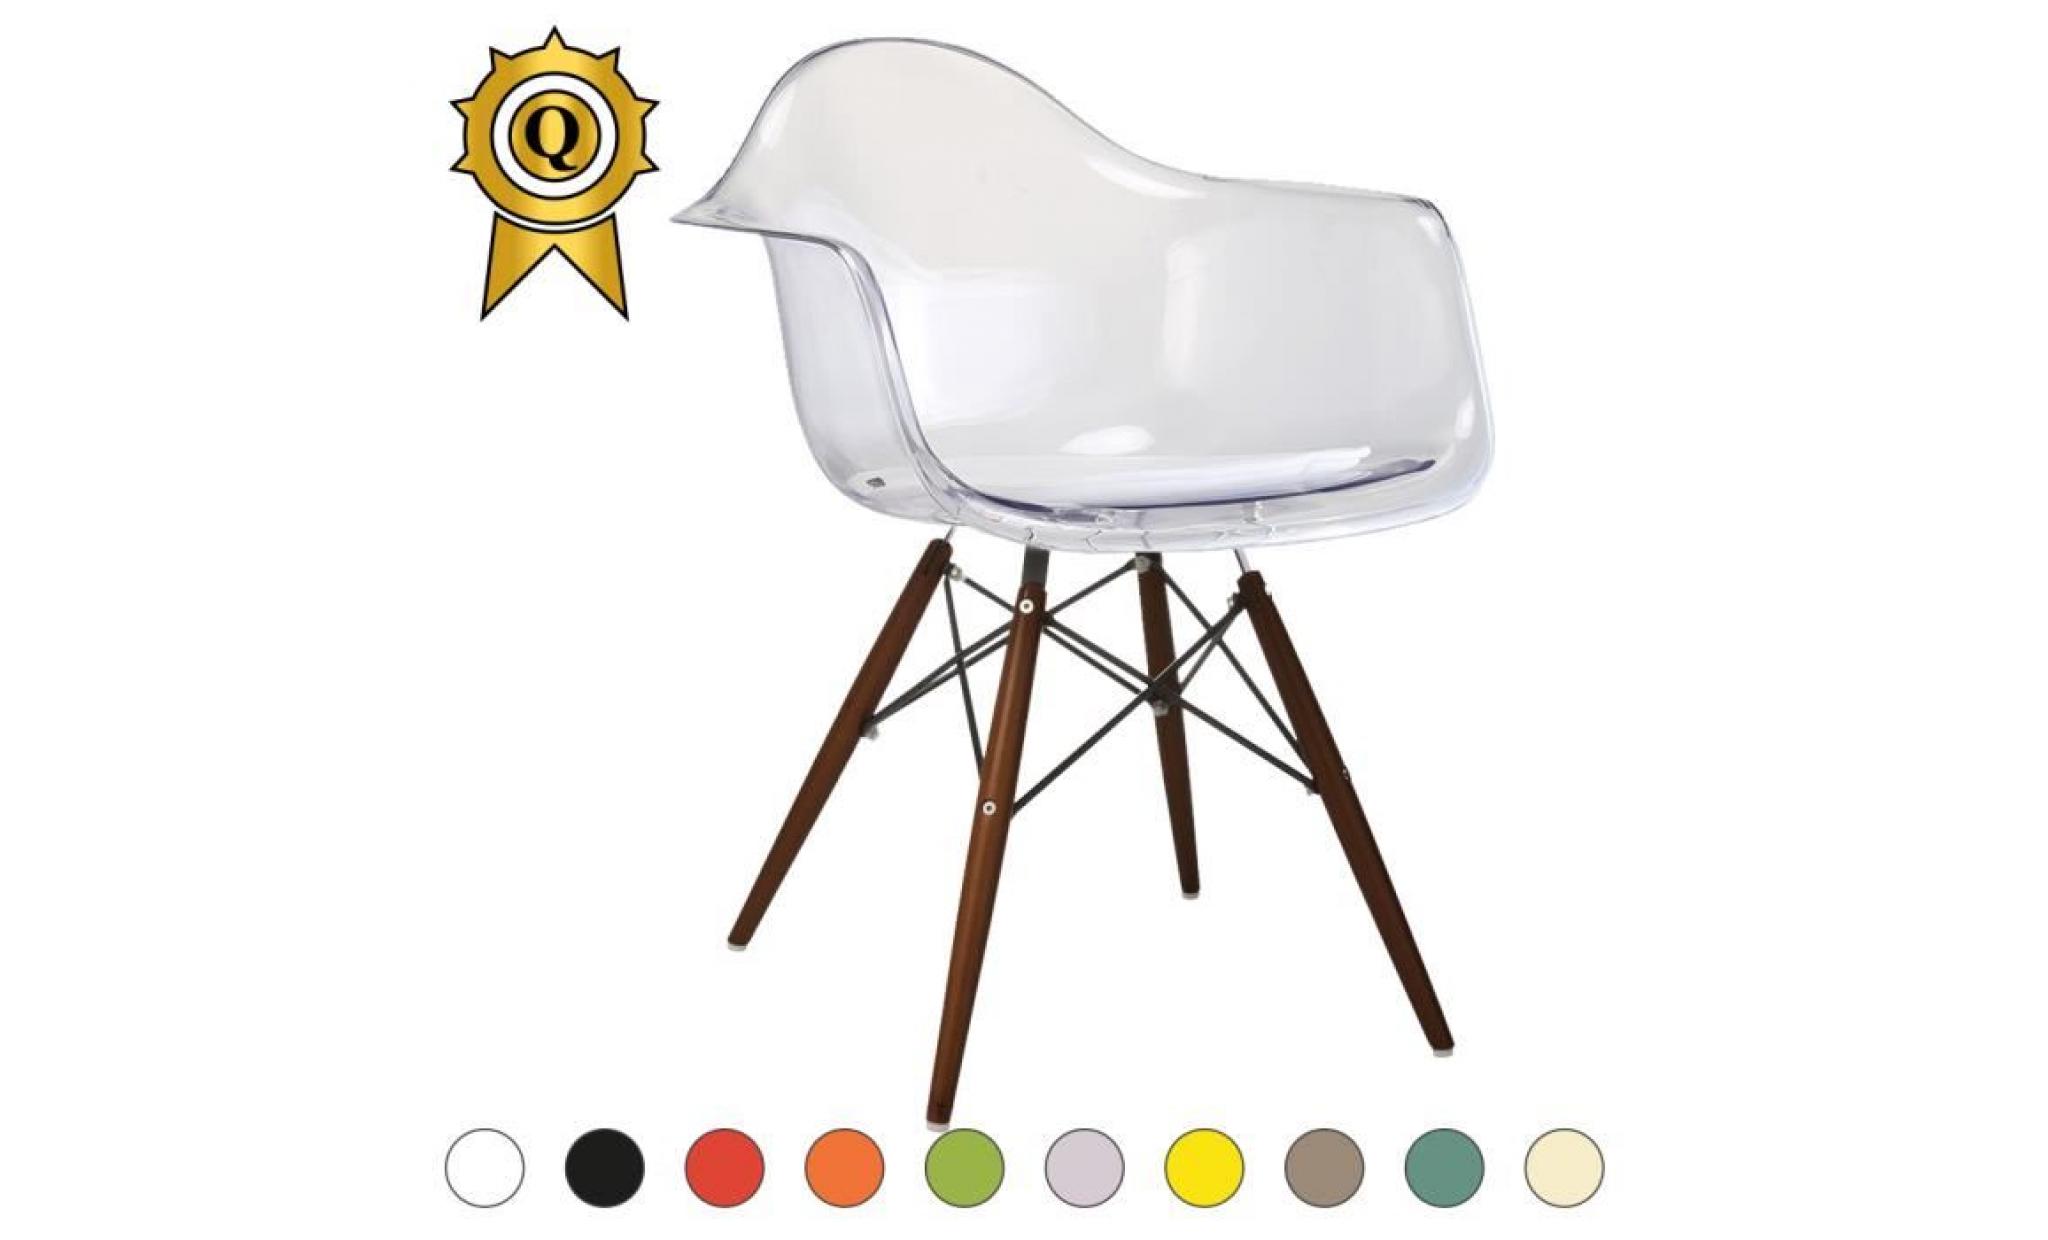 1 x fauteuil design retro style eames daw hauteur 48cm pieds en bois vernis noyer assise bordeaux mobistyl®